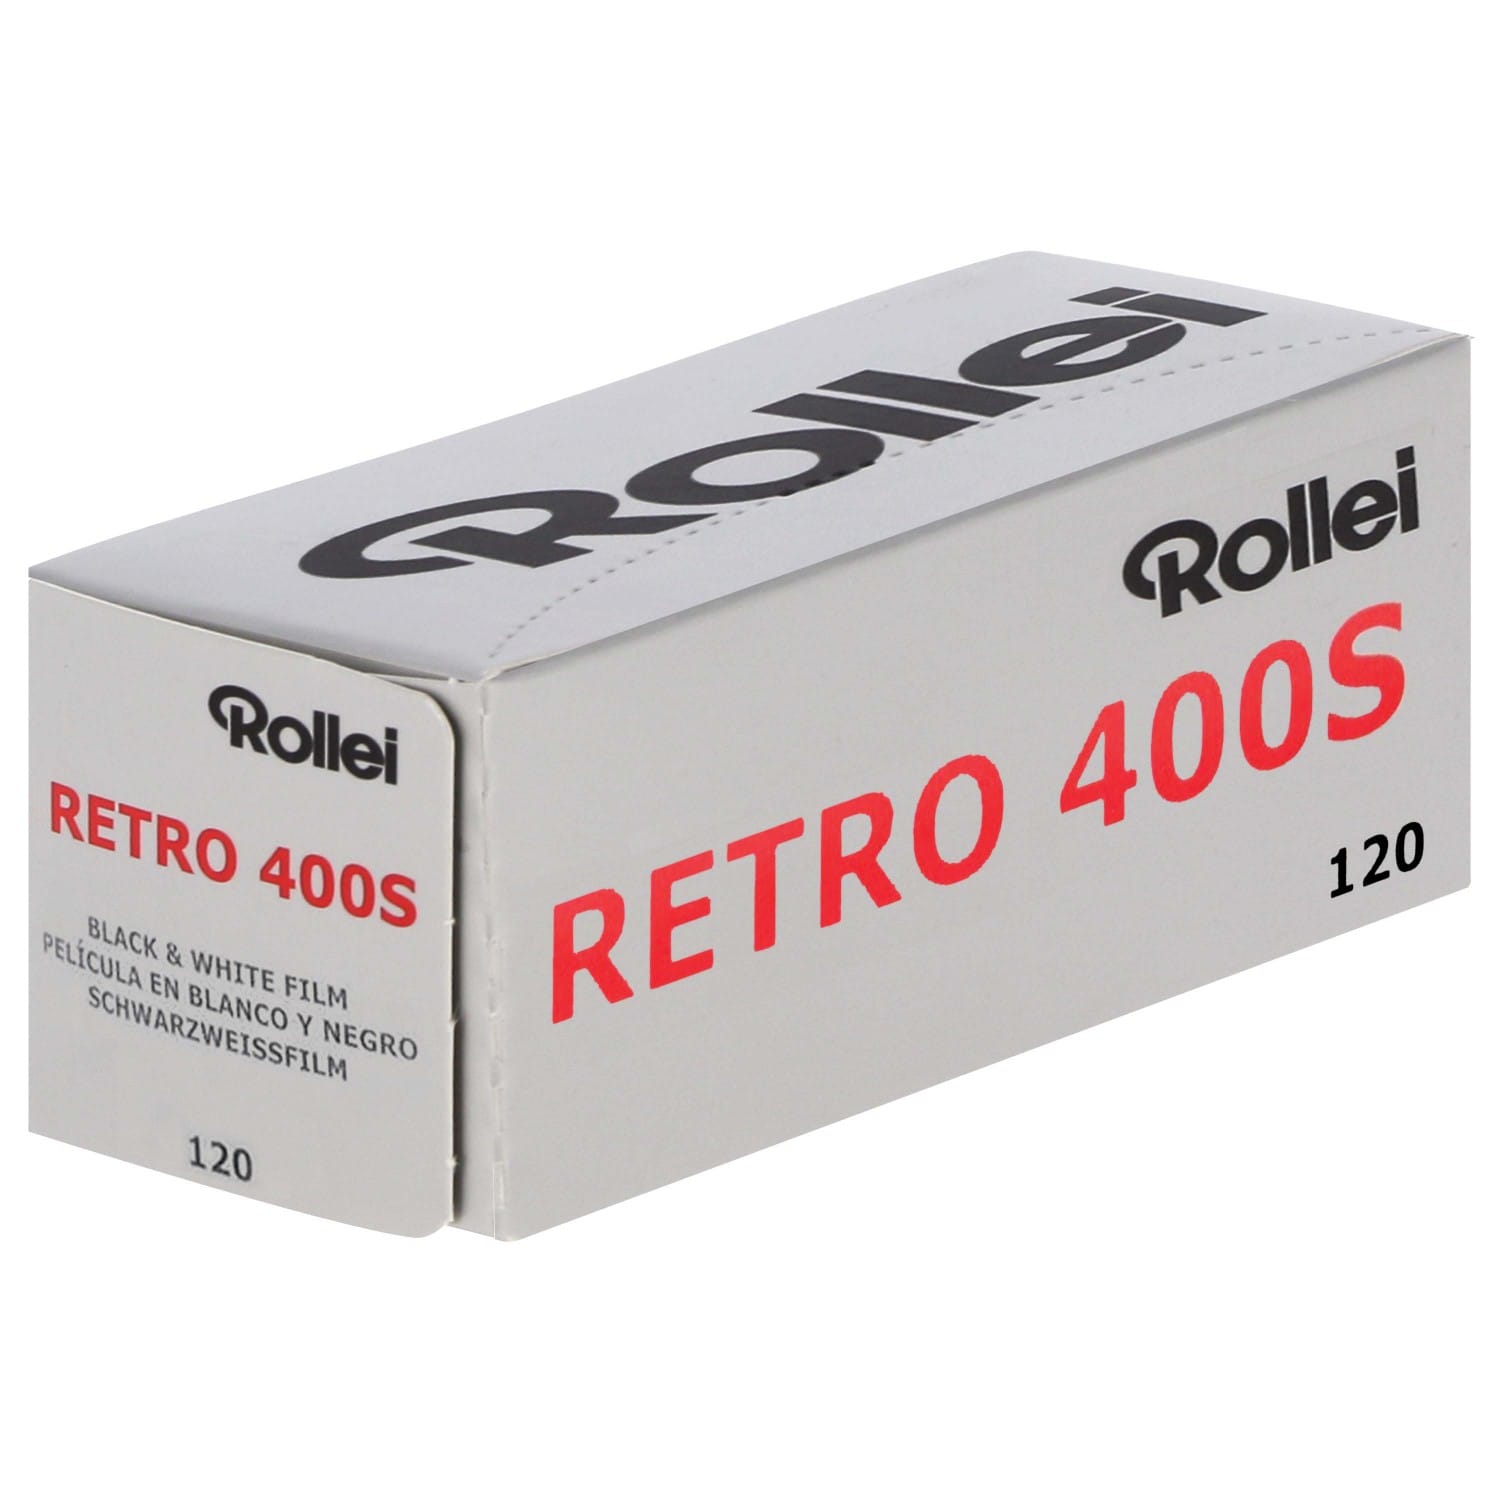 FRESH: Rollei Retro 400S Pellicule Argentique Photo Film 120 Noir & Blanc 